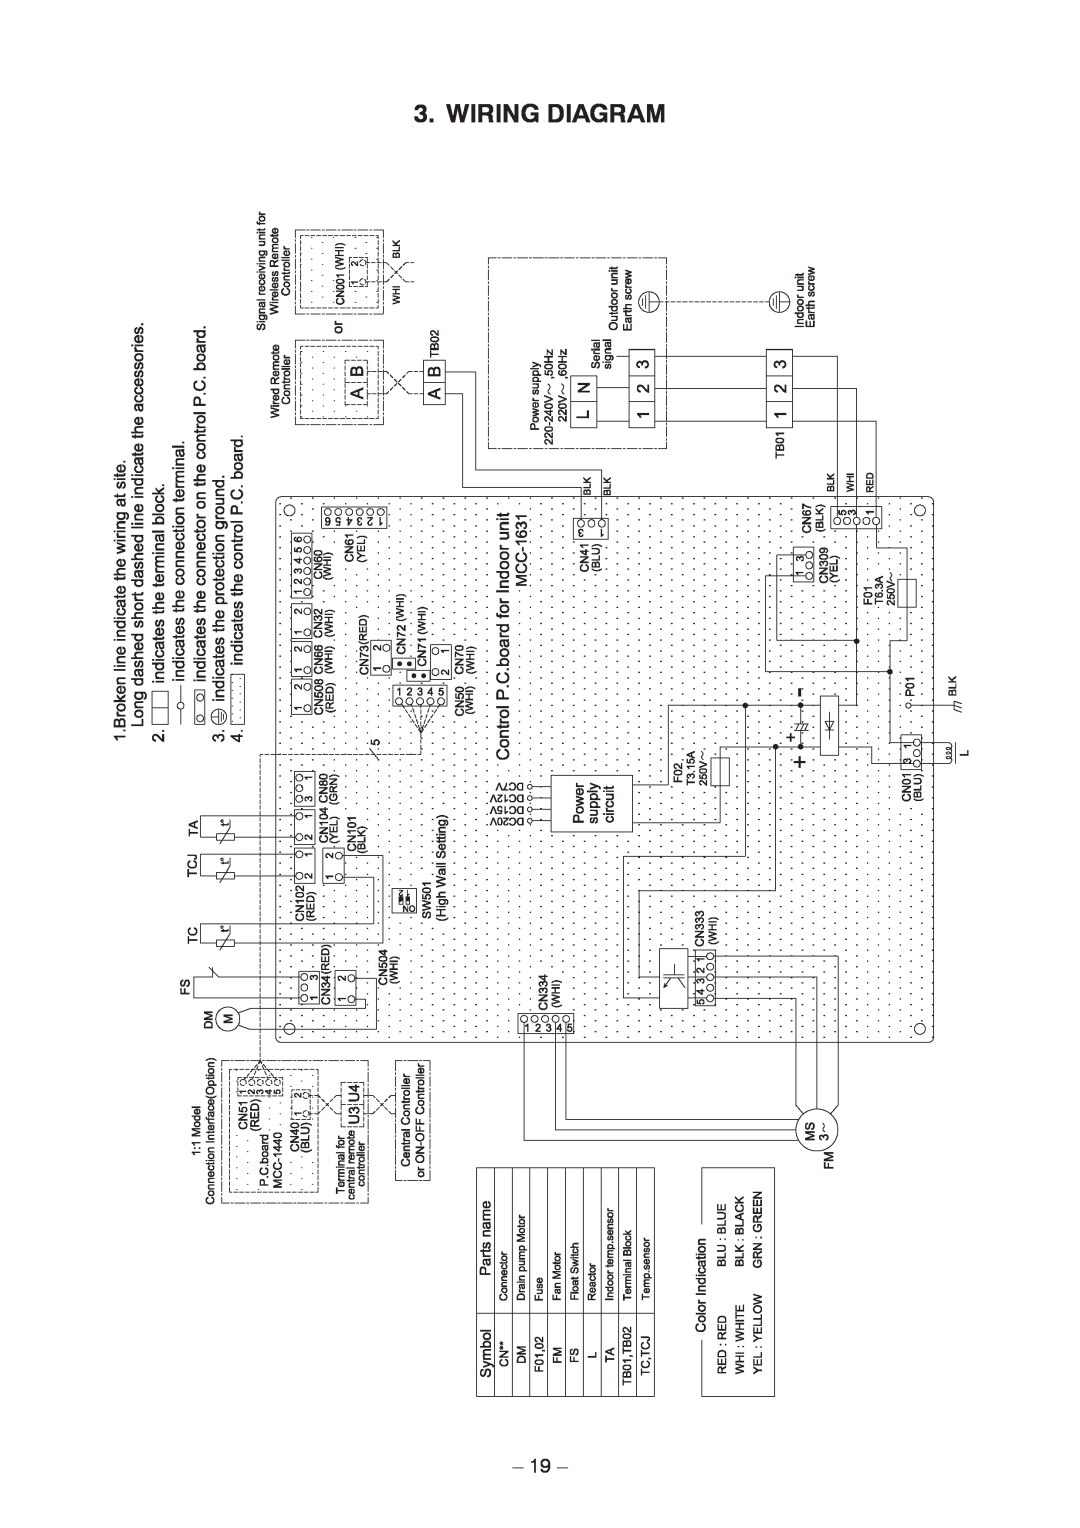 Toshiba RAV-SM1106BT-TR, RAV-SM406BT-TR, RAV-SM1406BT-E, RAV-SM1606BT-E, RAV-SM1606BT-TR, RAV-SM1406BT-TR Wiring Diagram 